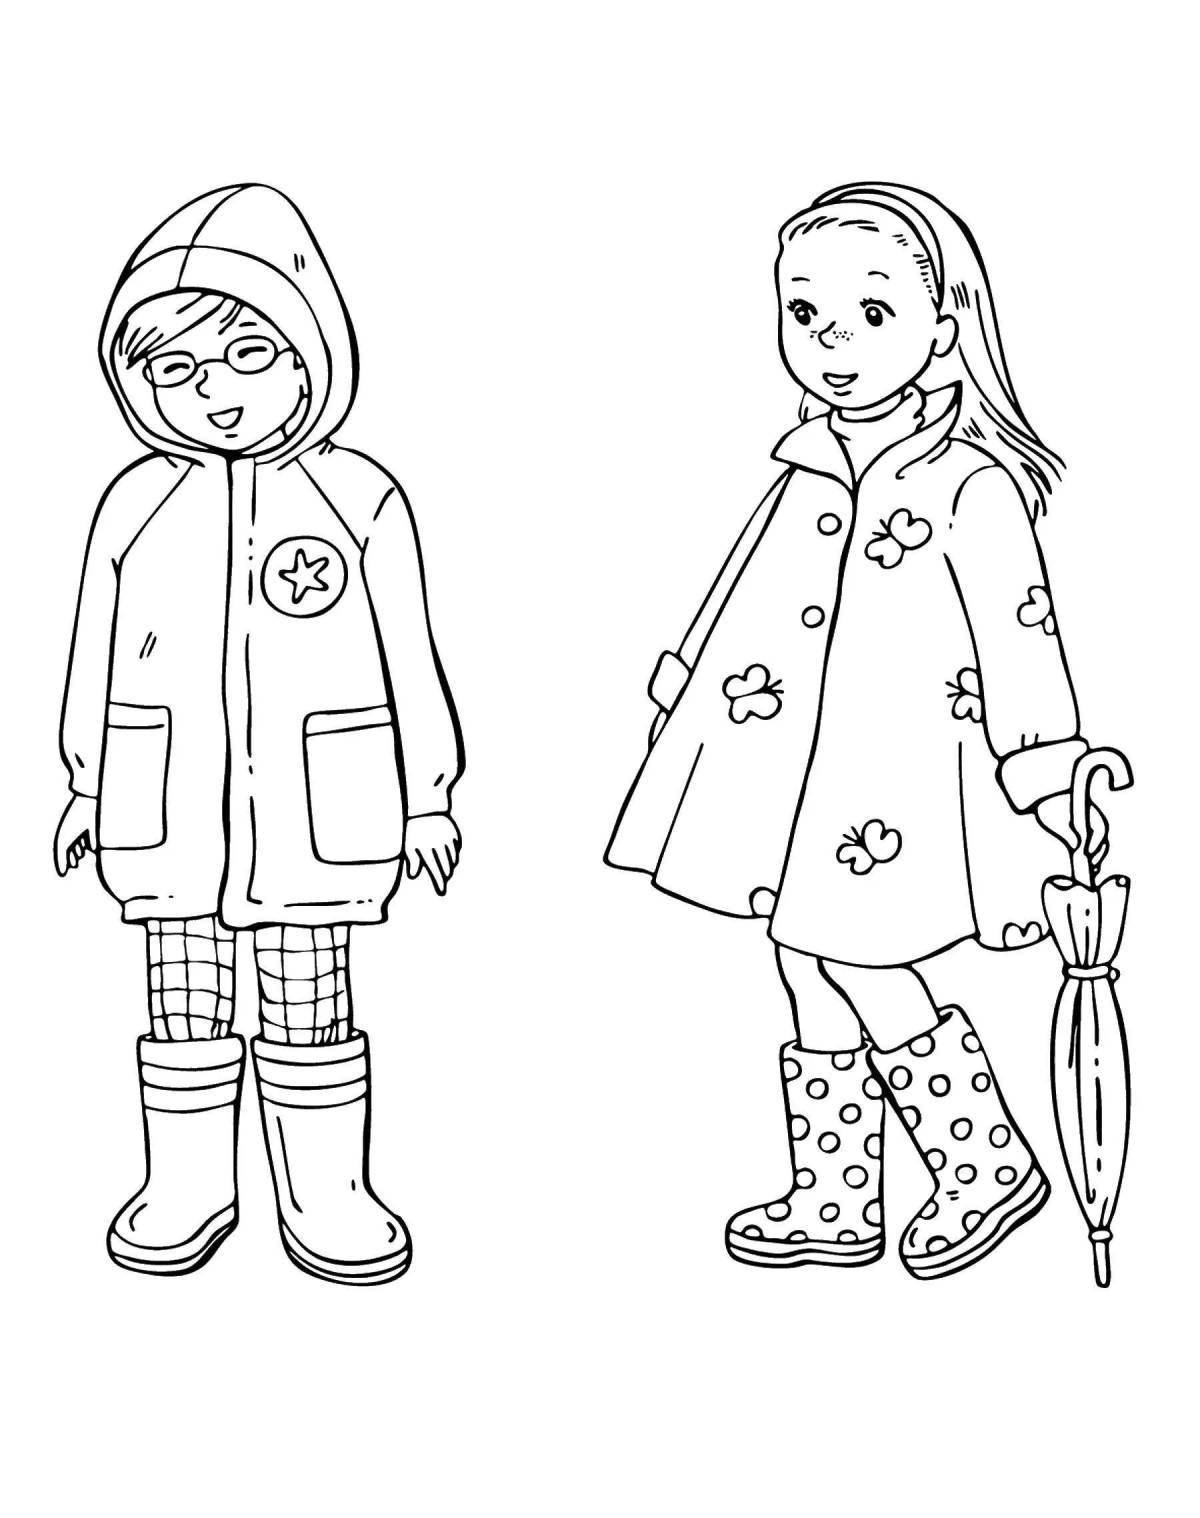 Веселая раскраска зимней одежды для детей 3-4 лет